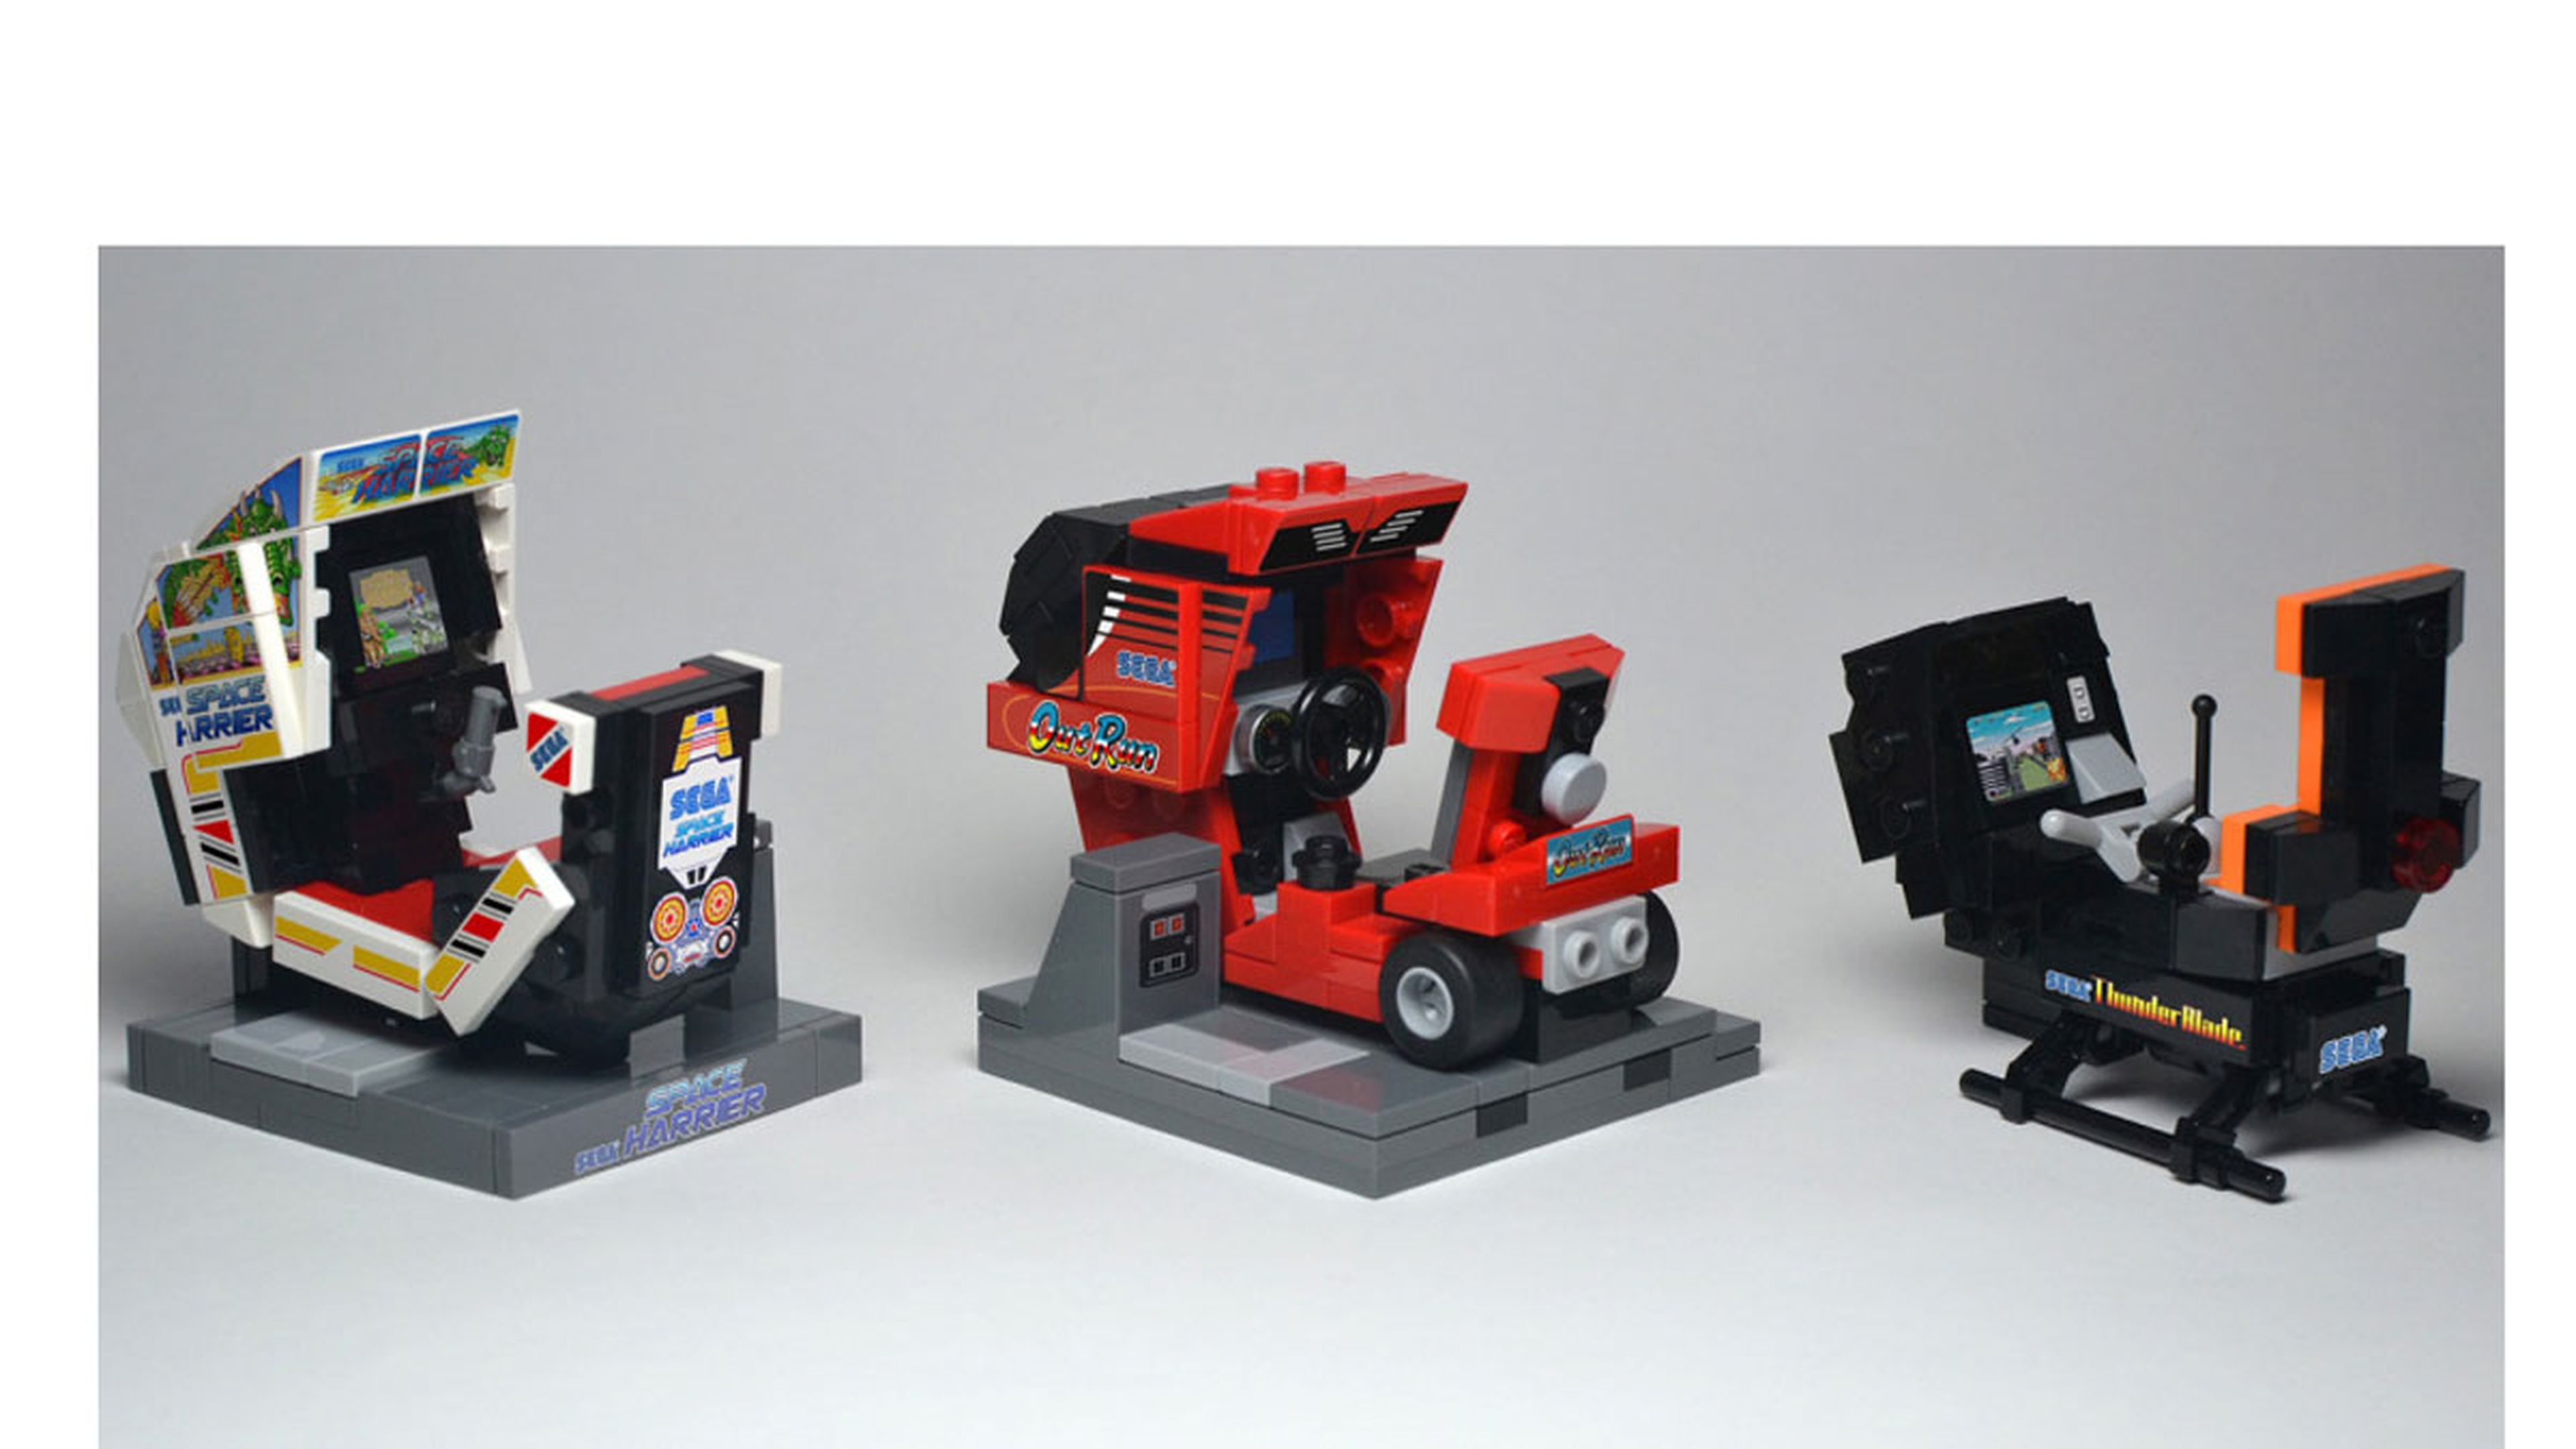 ¿Una maquina de videojuegos con volante Lego? Sí